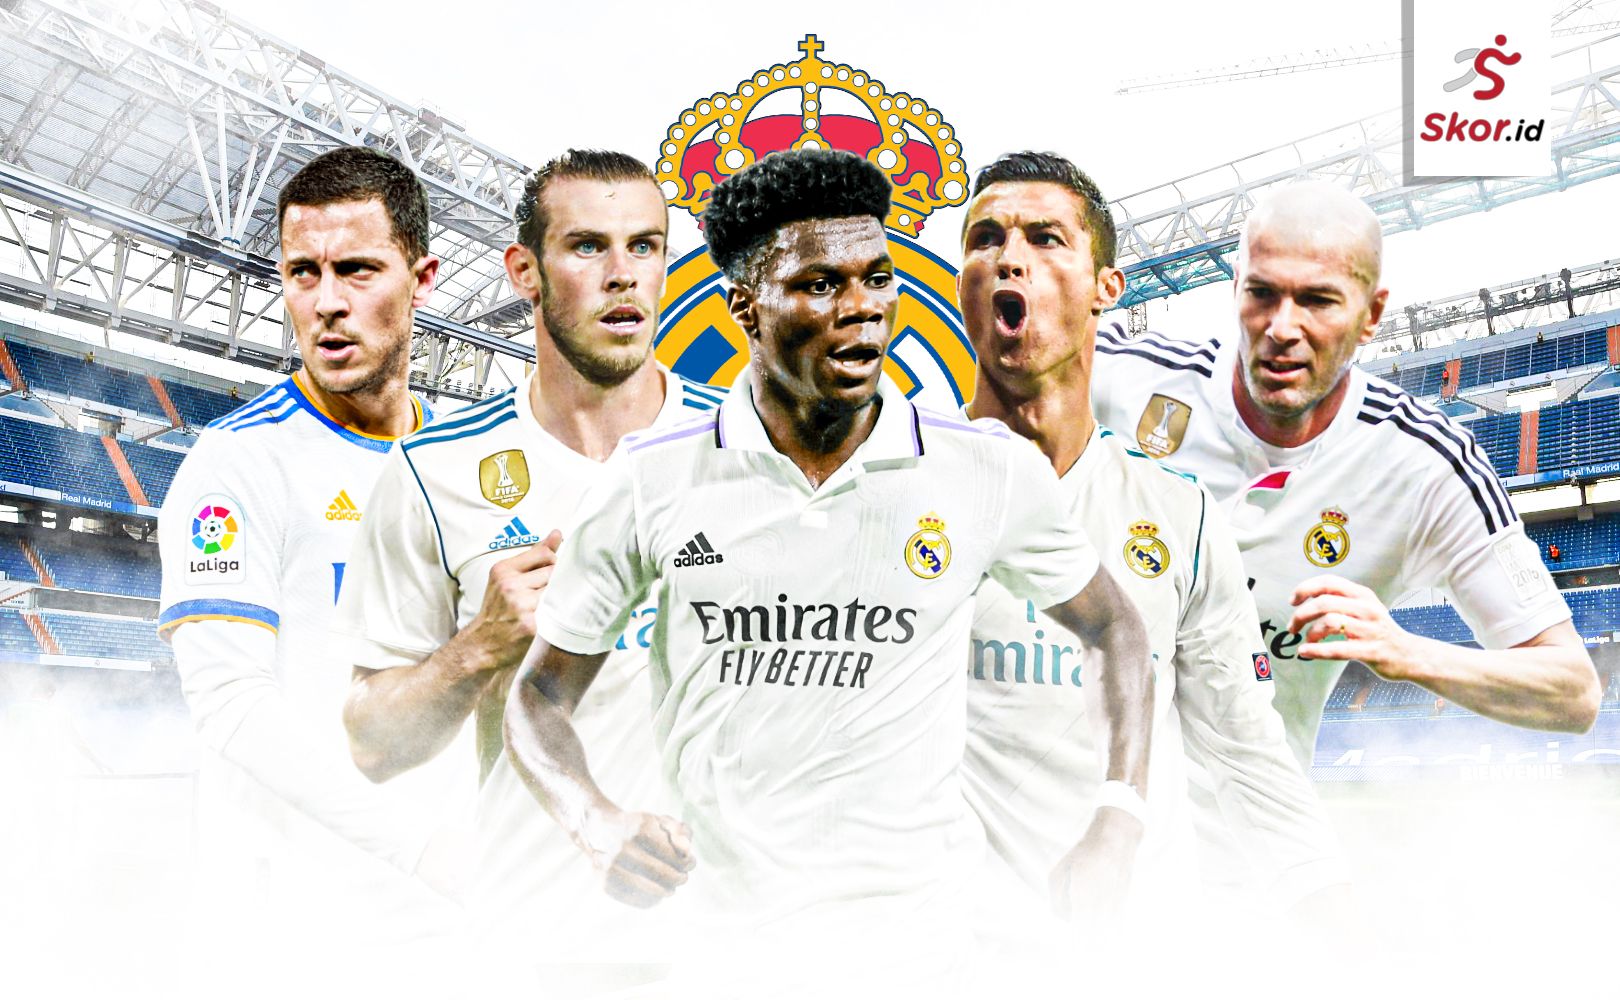 Pemain termahal Real Madrid: Eden Hazard, Gareth Bale, Aurelien Tchouameni, Cristiano Ronaldo, dan Zinedine Zidane.